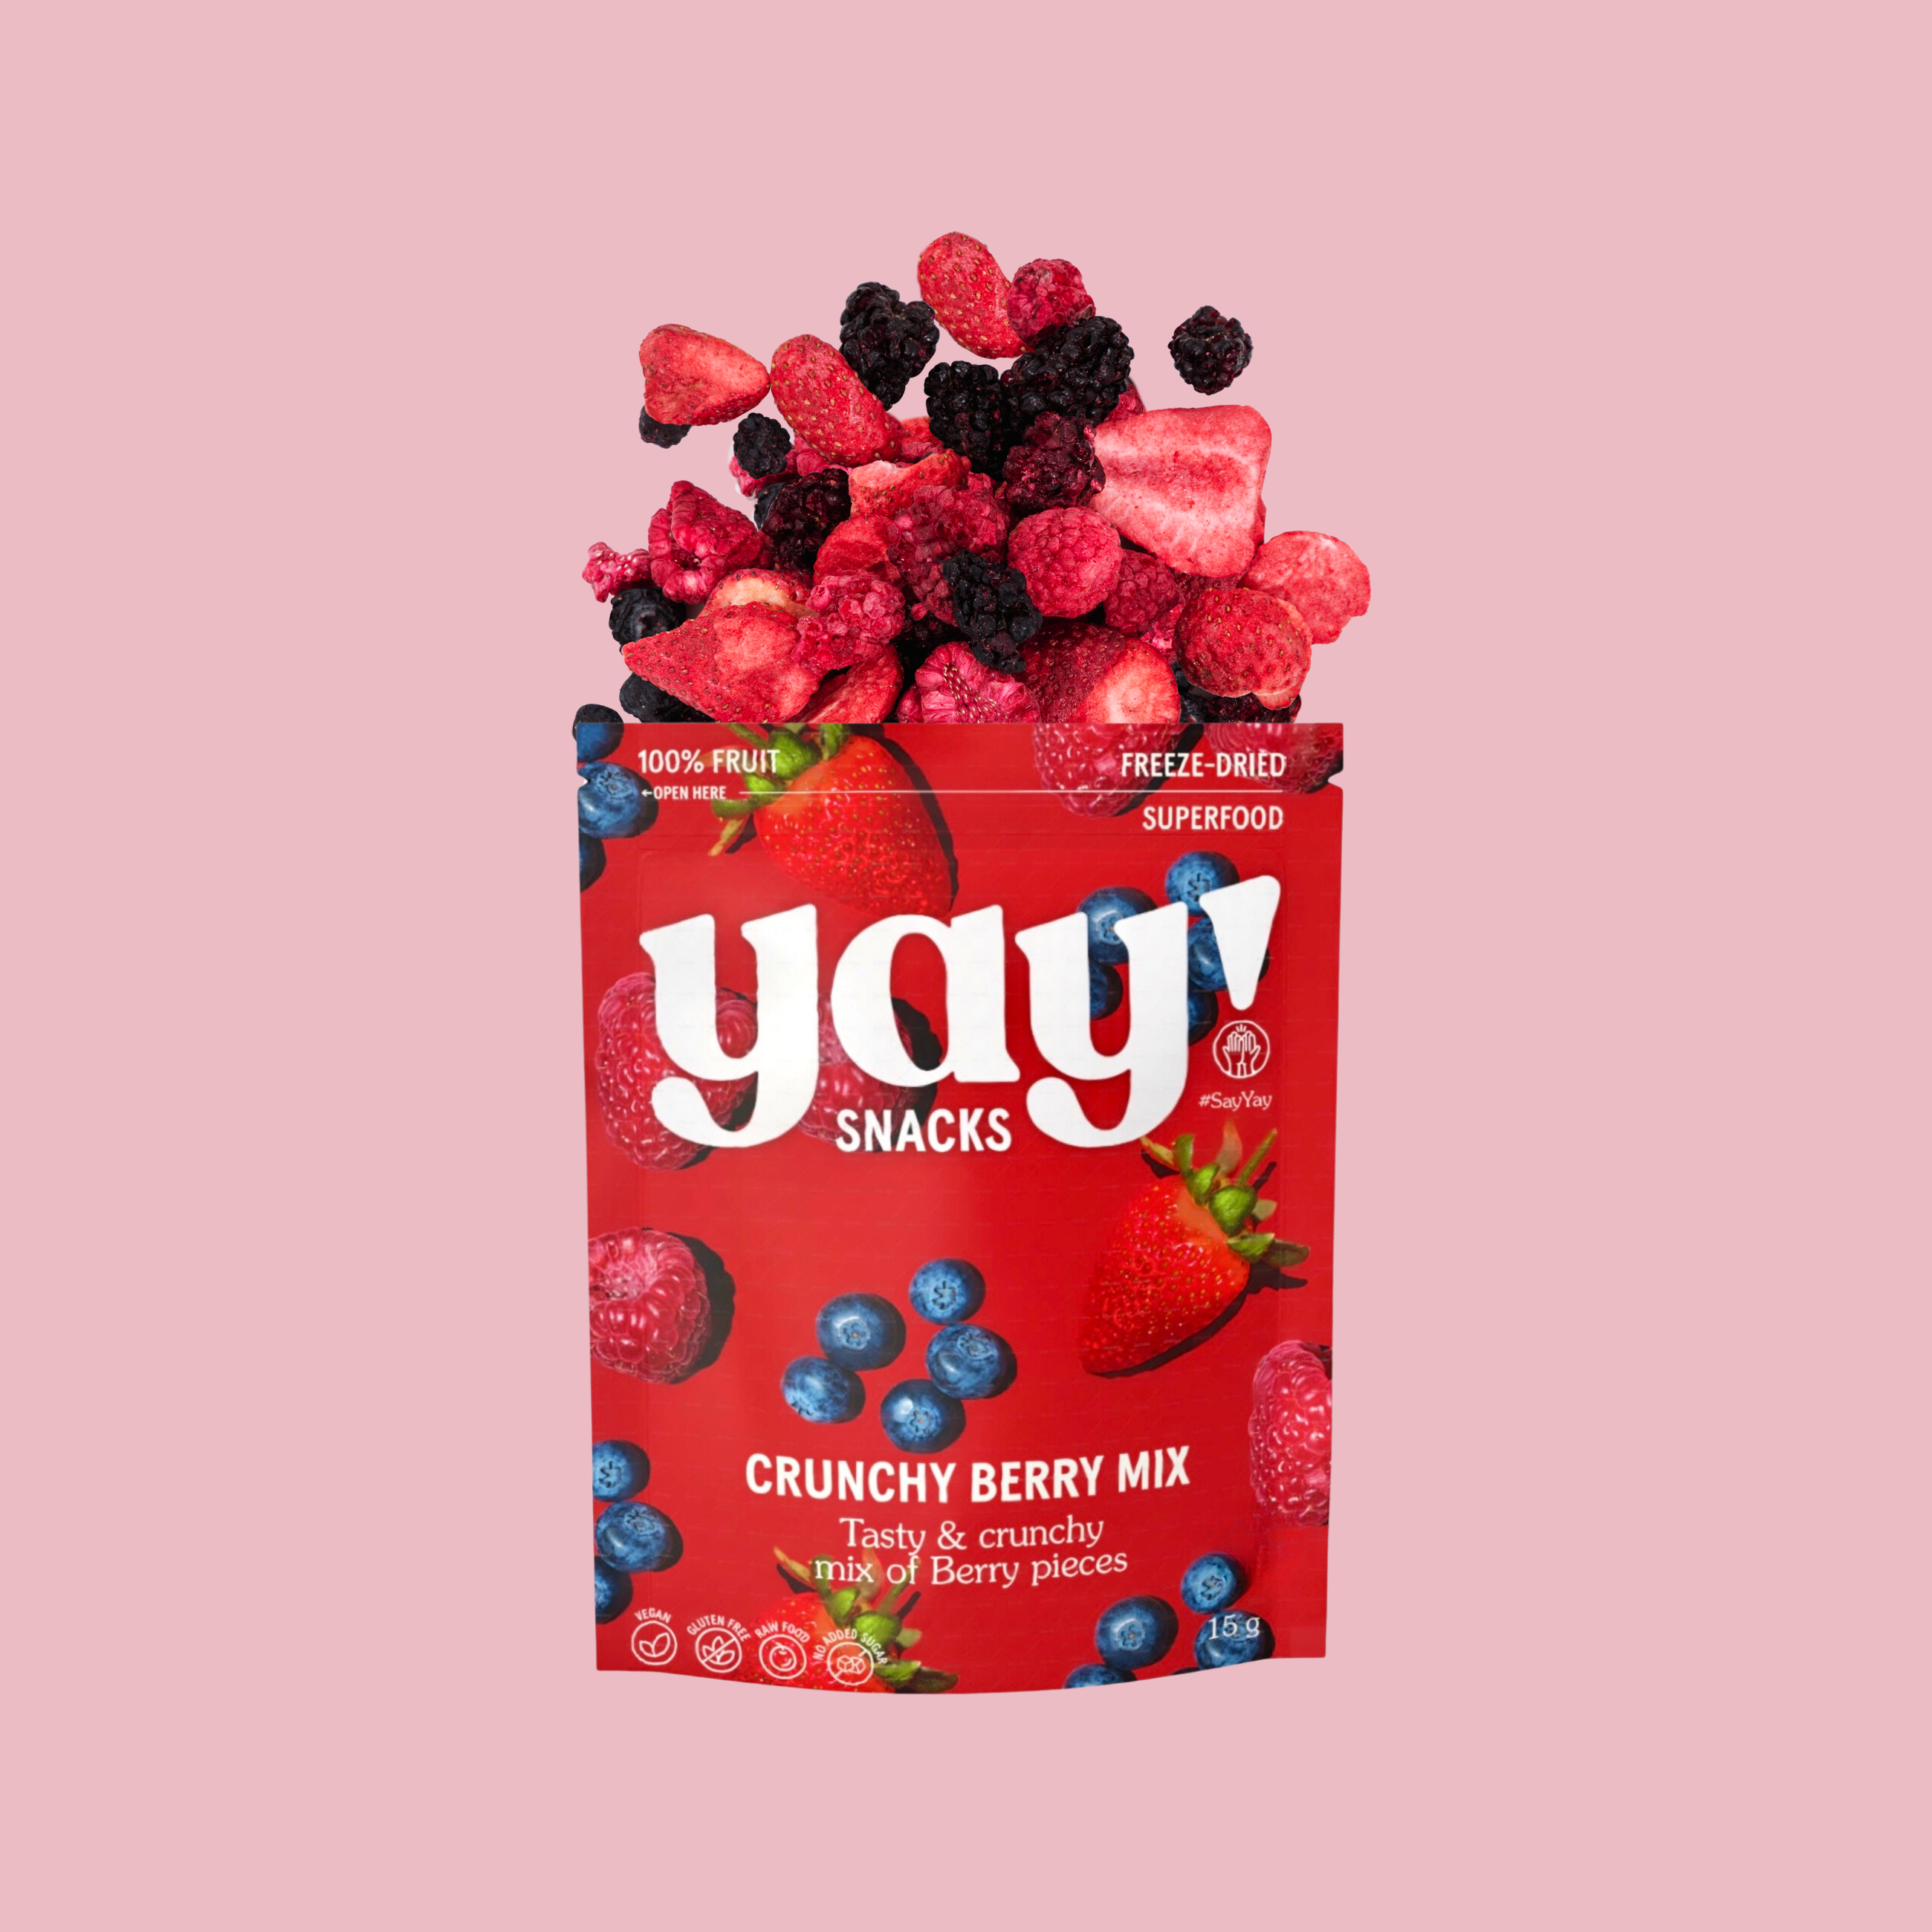 Crunchy Berry Mix